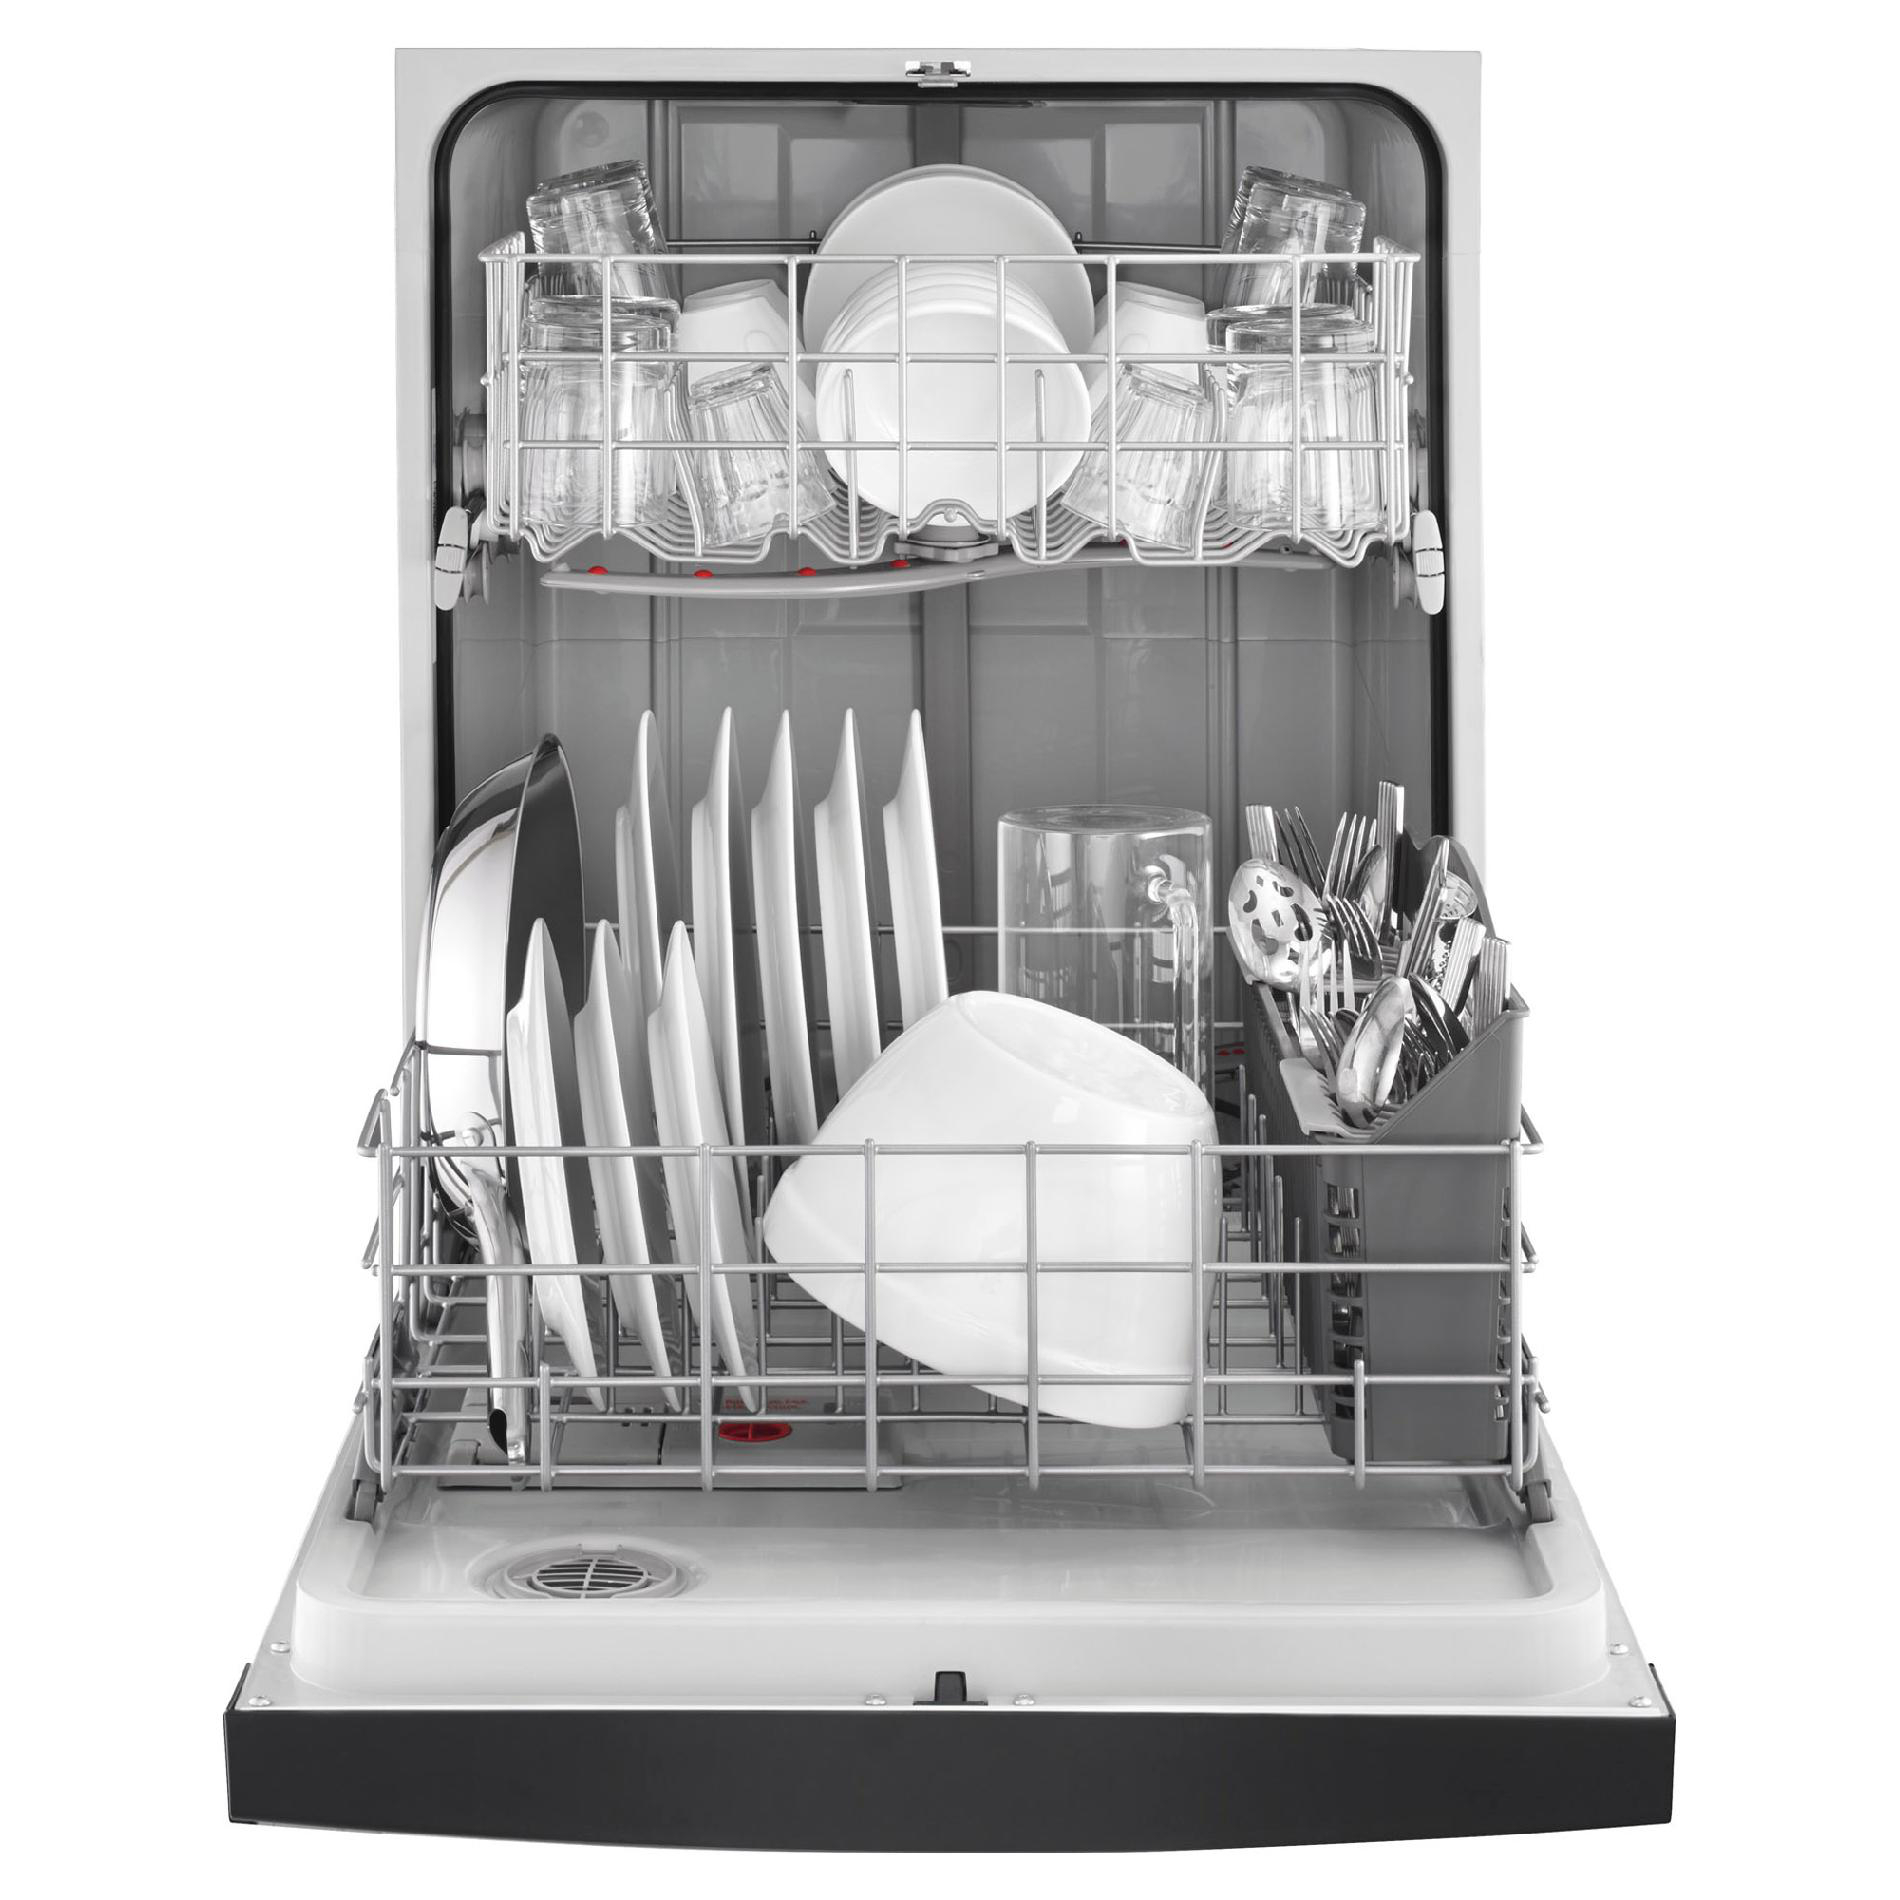 kenmore dishwasher reviews